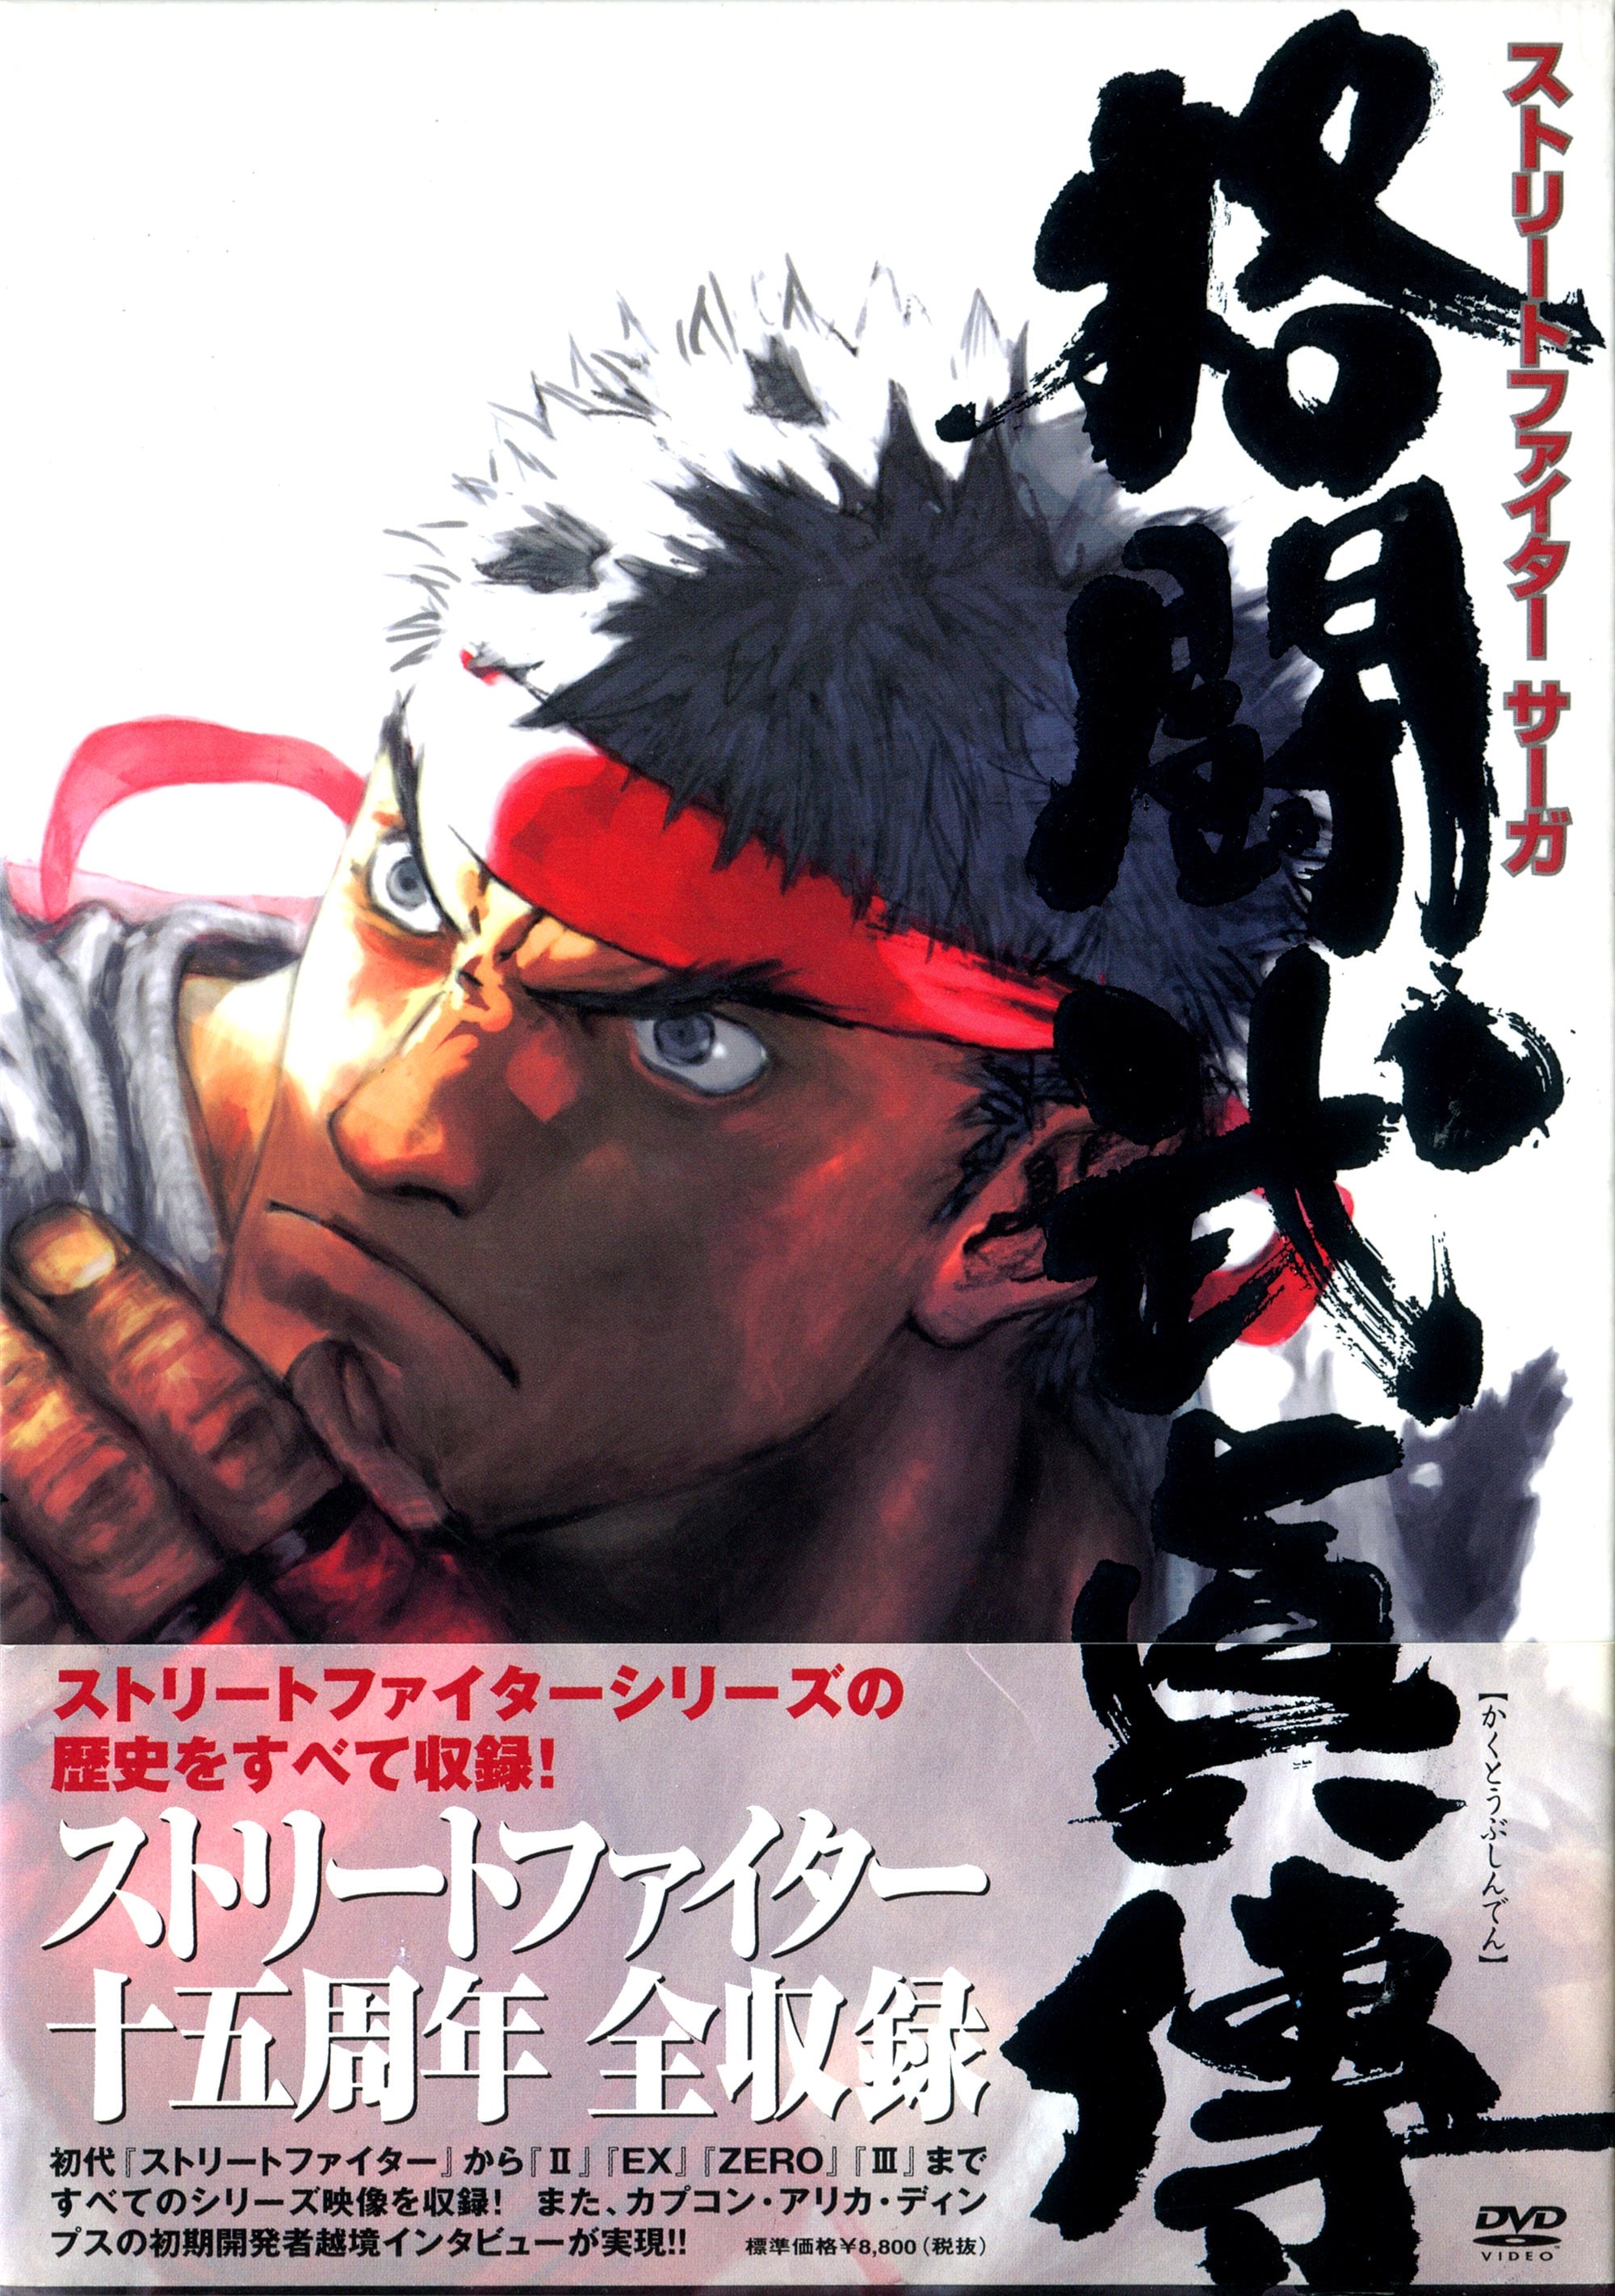 STREET FIGHTER SAGA ~Kakutou Bushiden~ Famitsu DVD Video